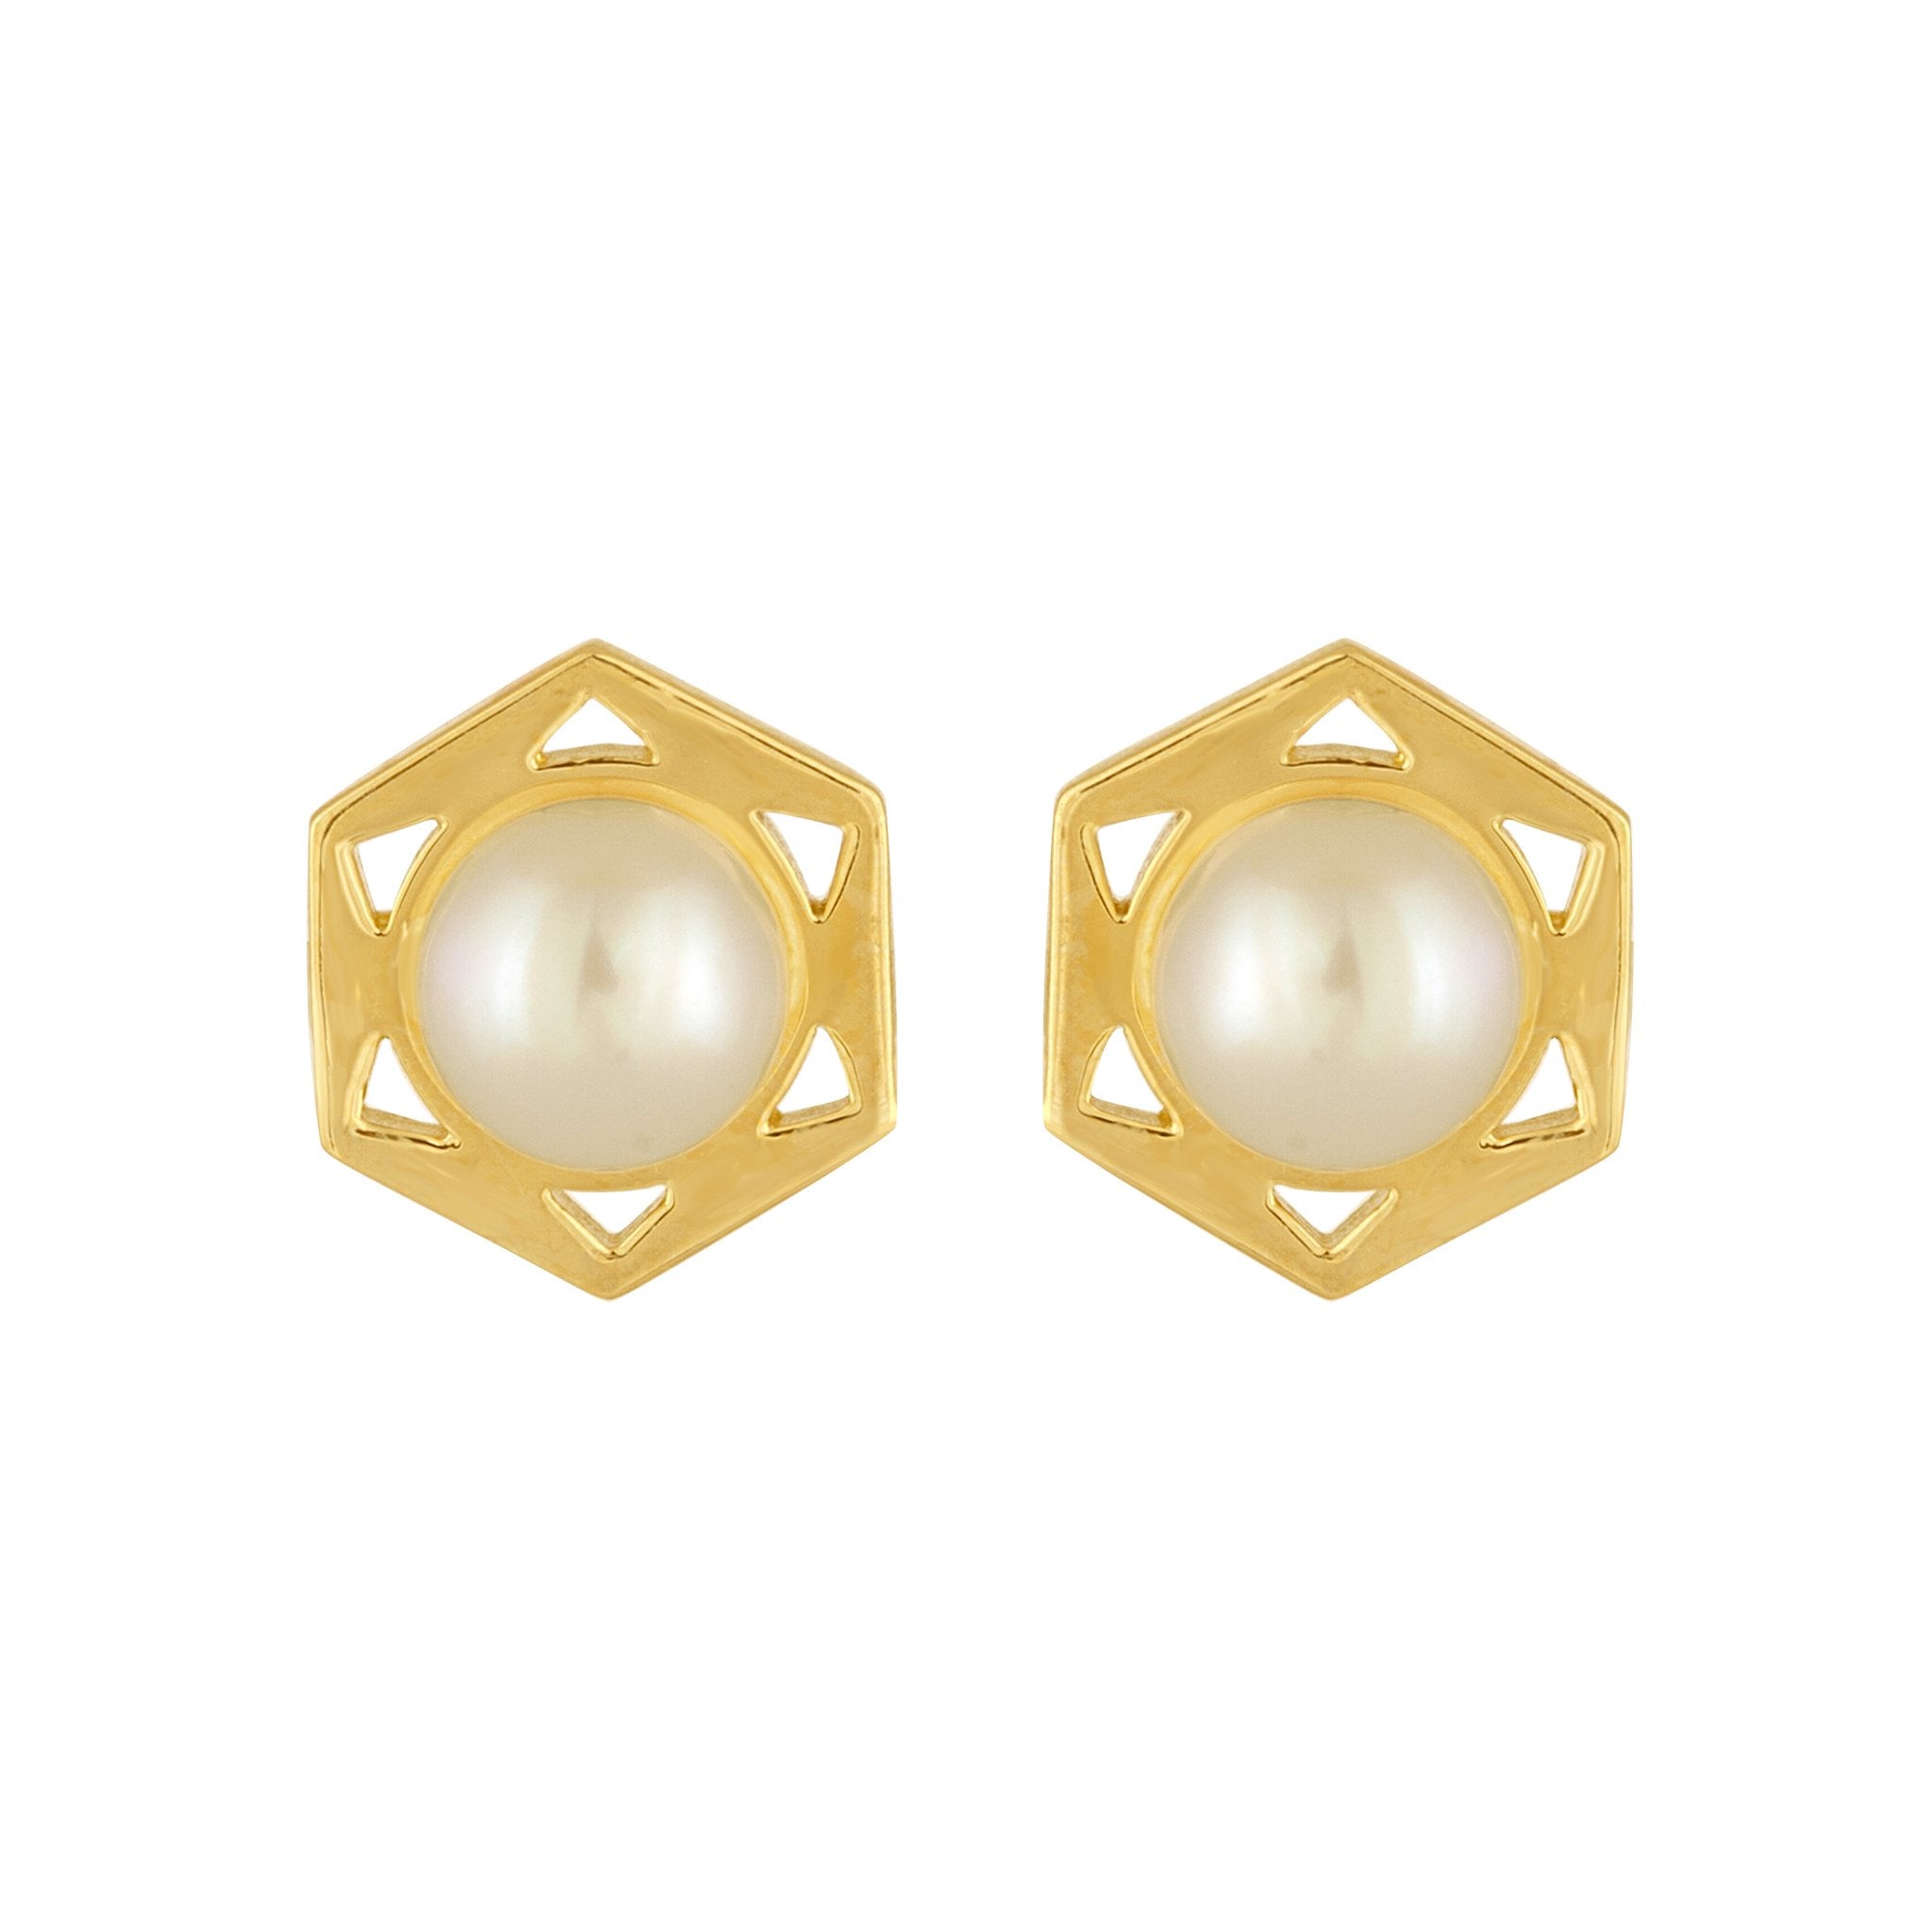 Cosmo Stud Earrings: 18k Gold, Pearls